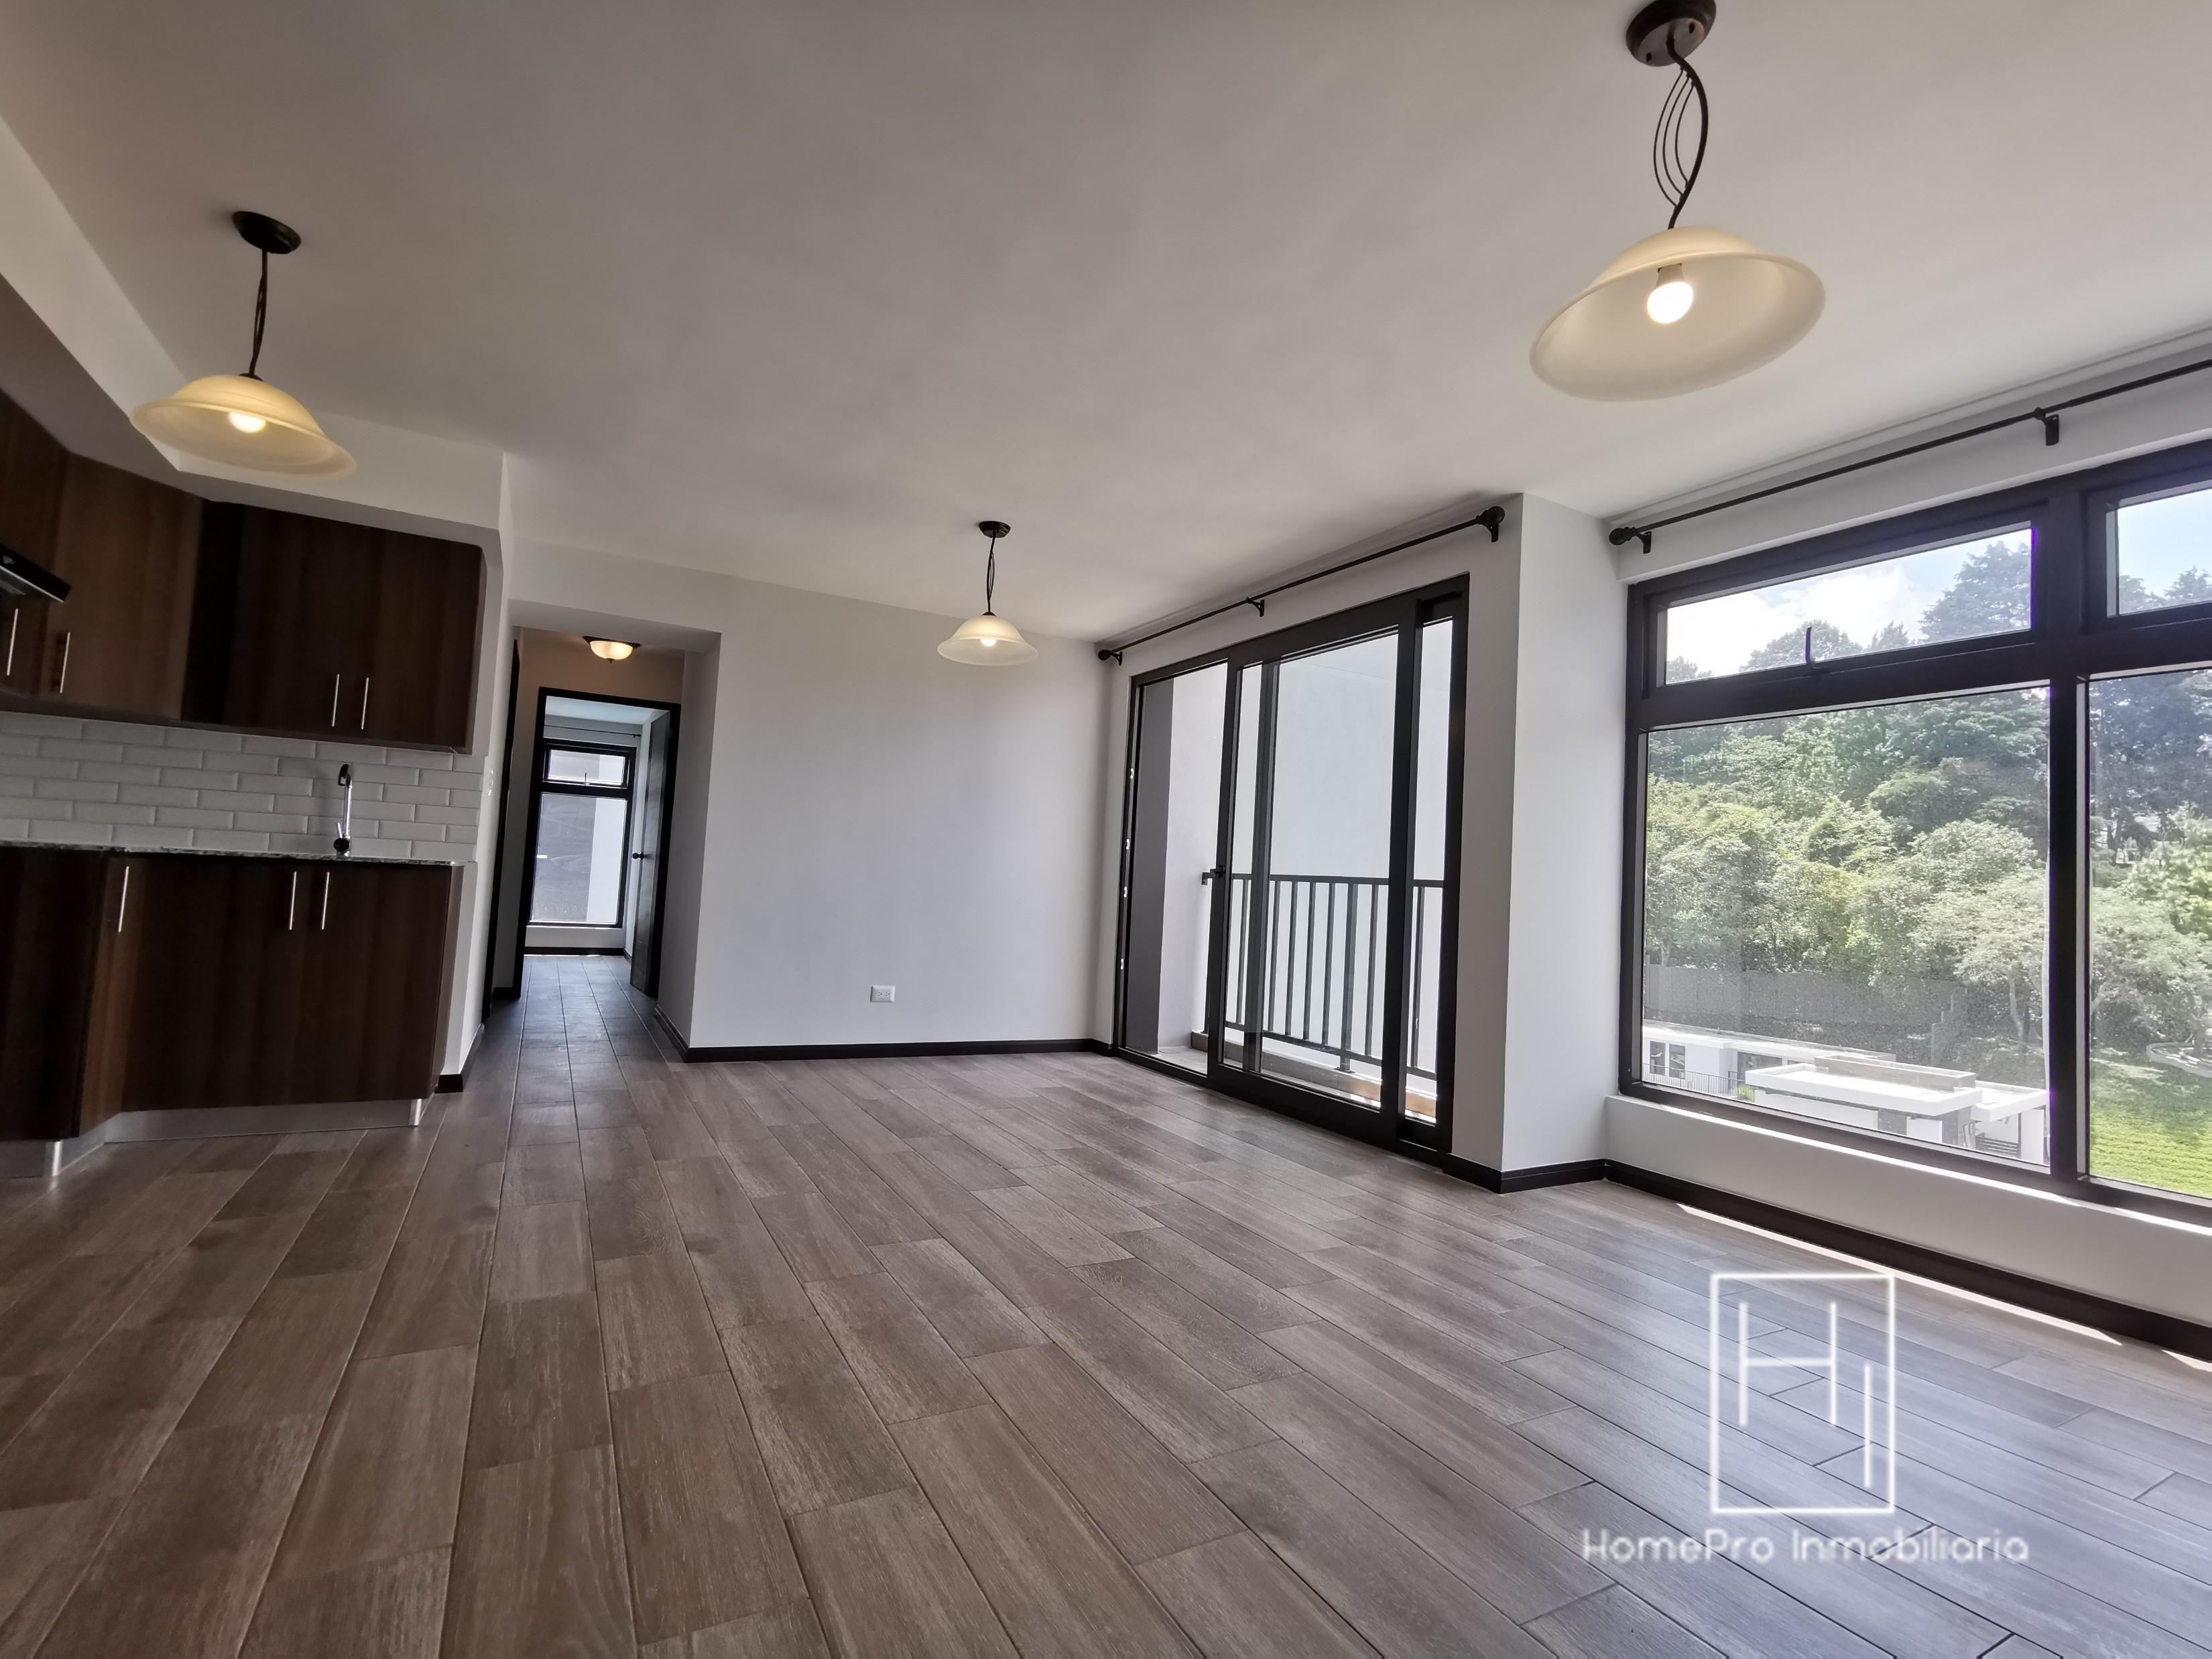 HomePro Inmobiliaria renta apartamento nuevo en Nagano, Santa Catarina Pinula.